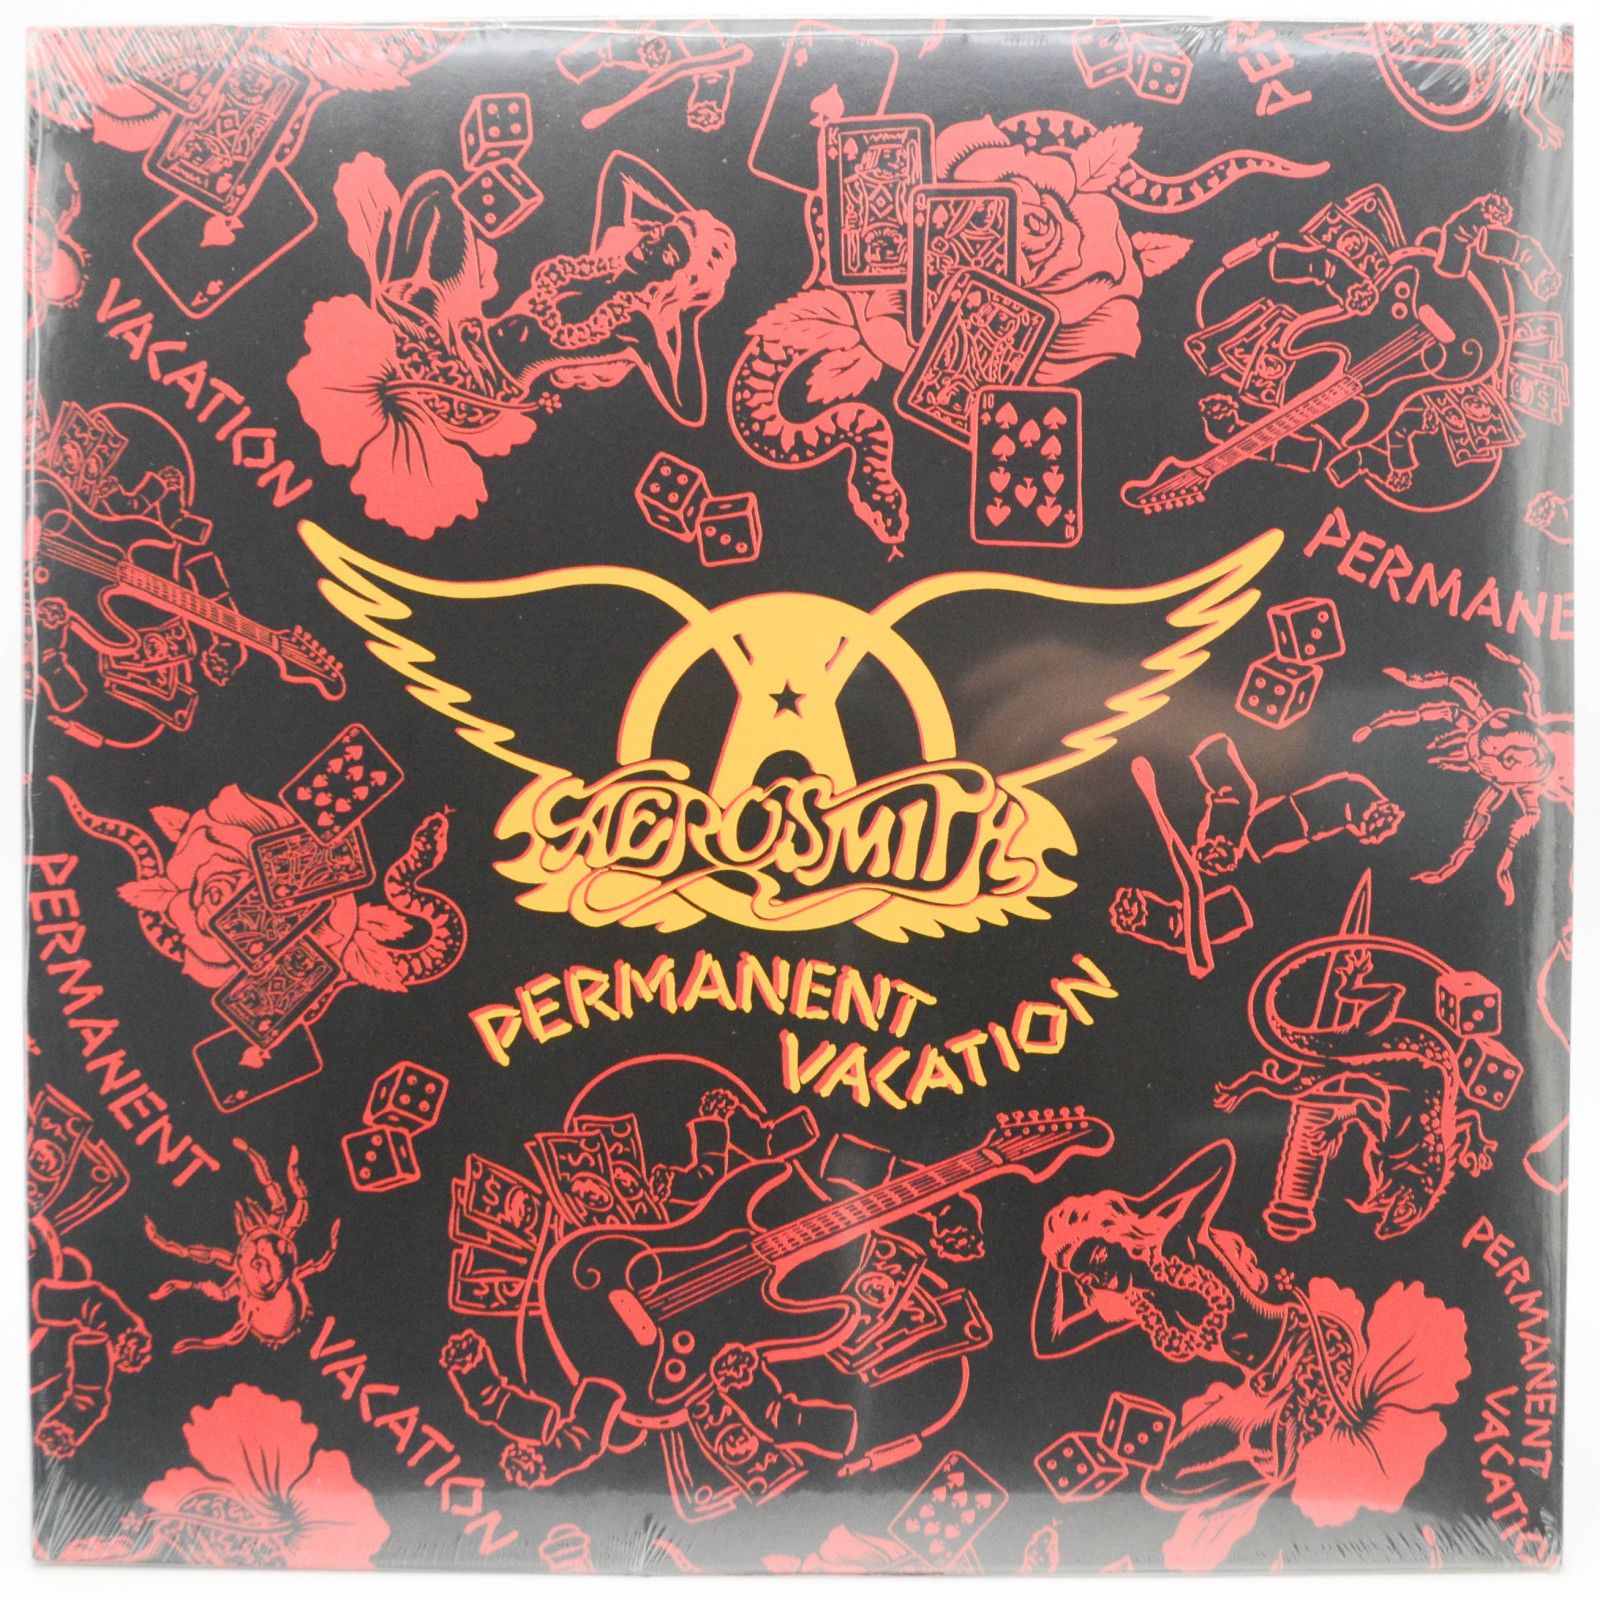 Aerosmith — Permanent Vacation, 1987